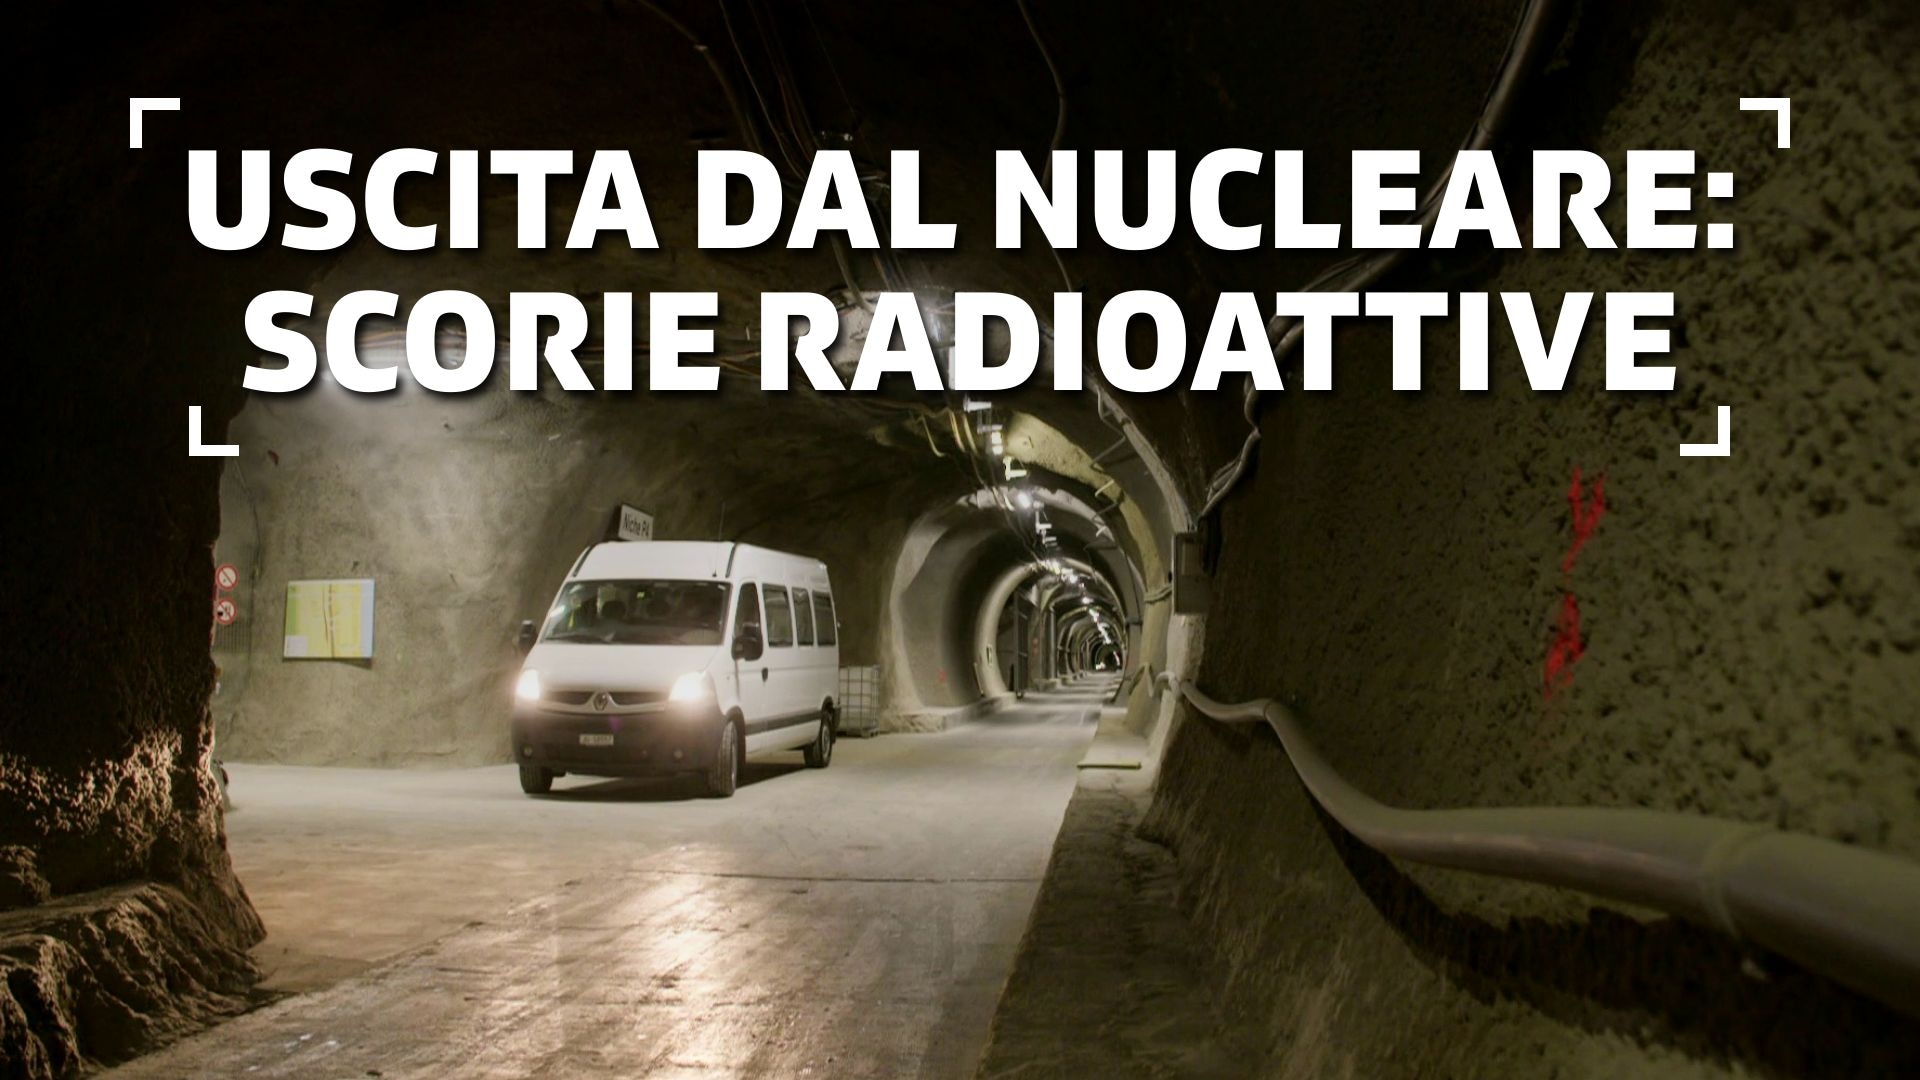 Uscita dal nucleare: scorie radioattive